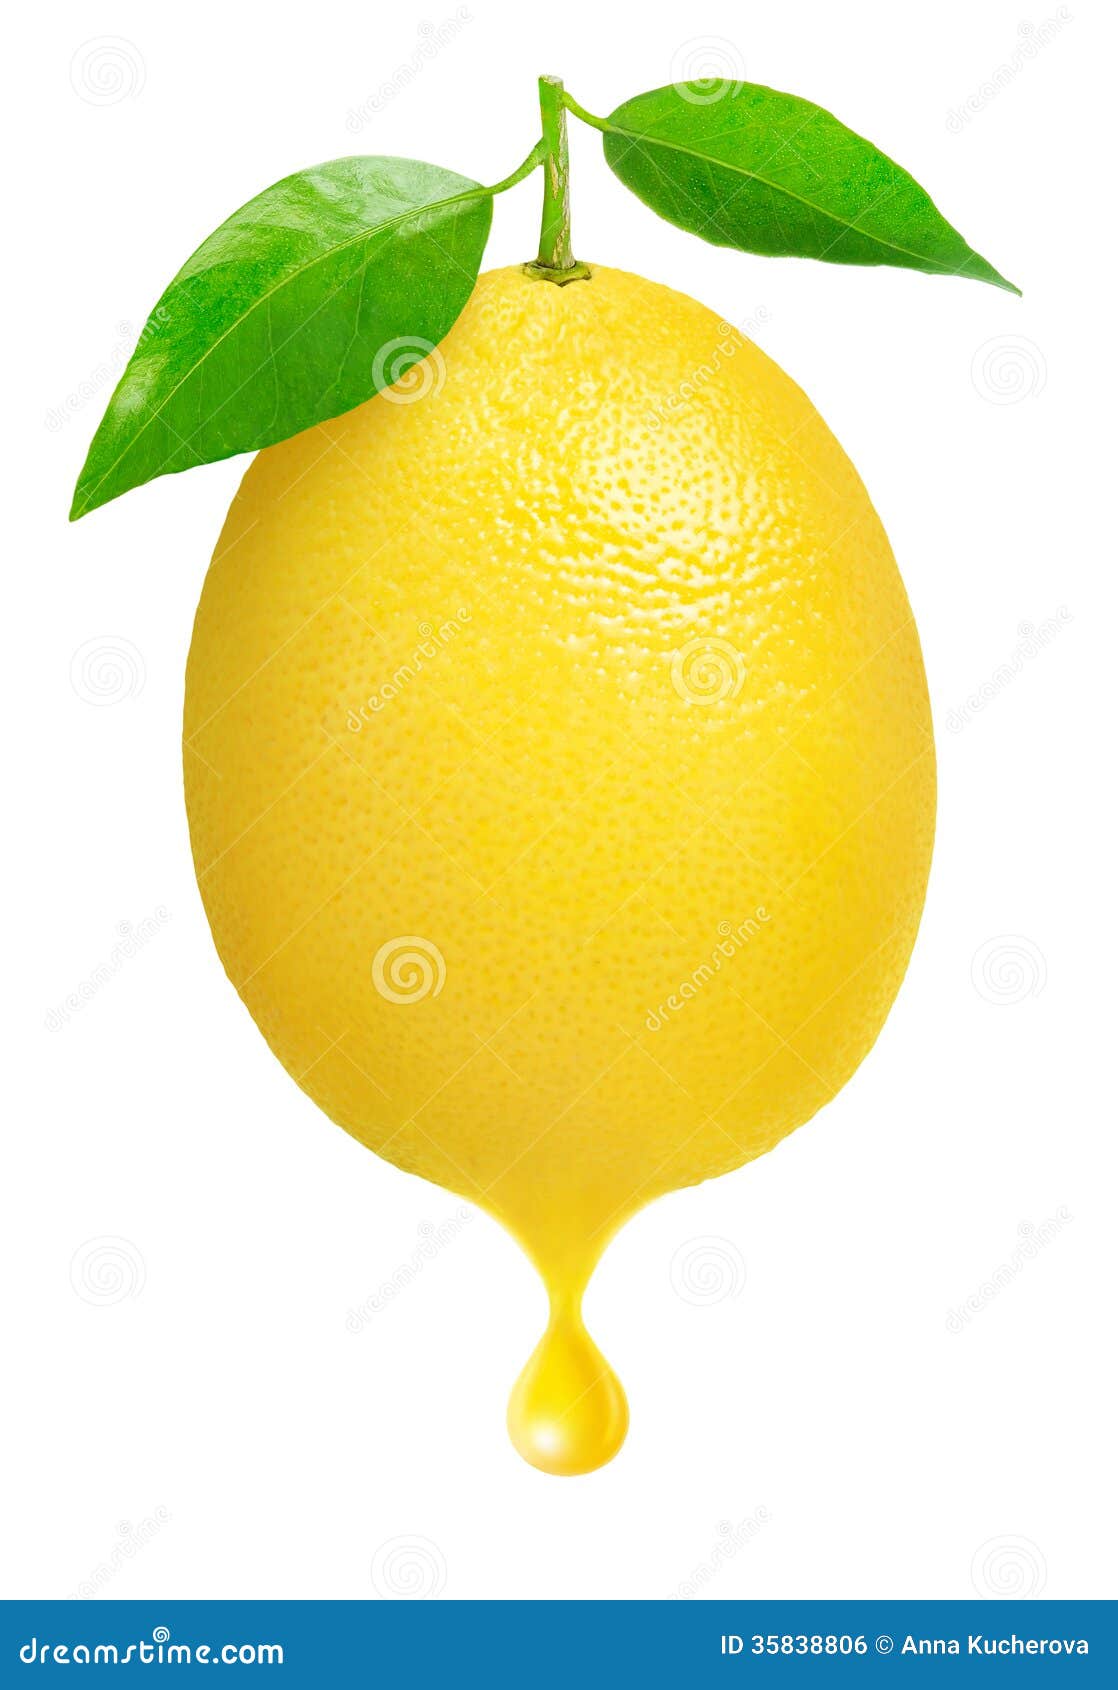 lemon drop clipart - photo #18